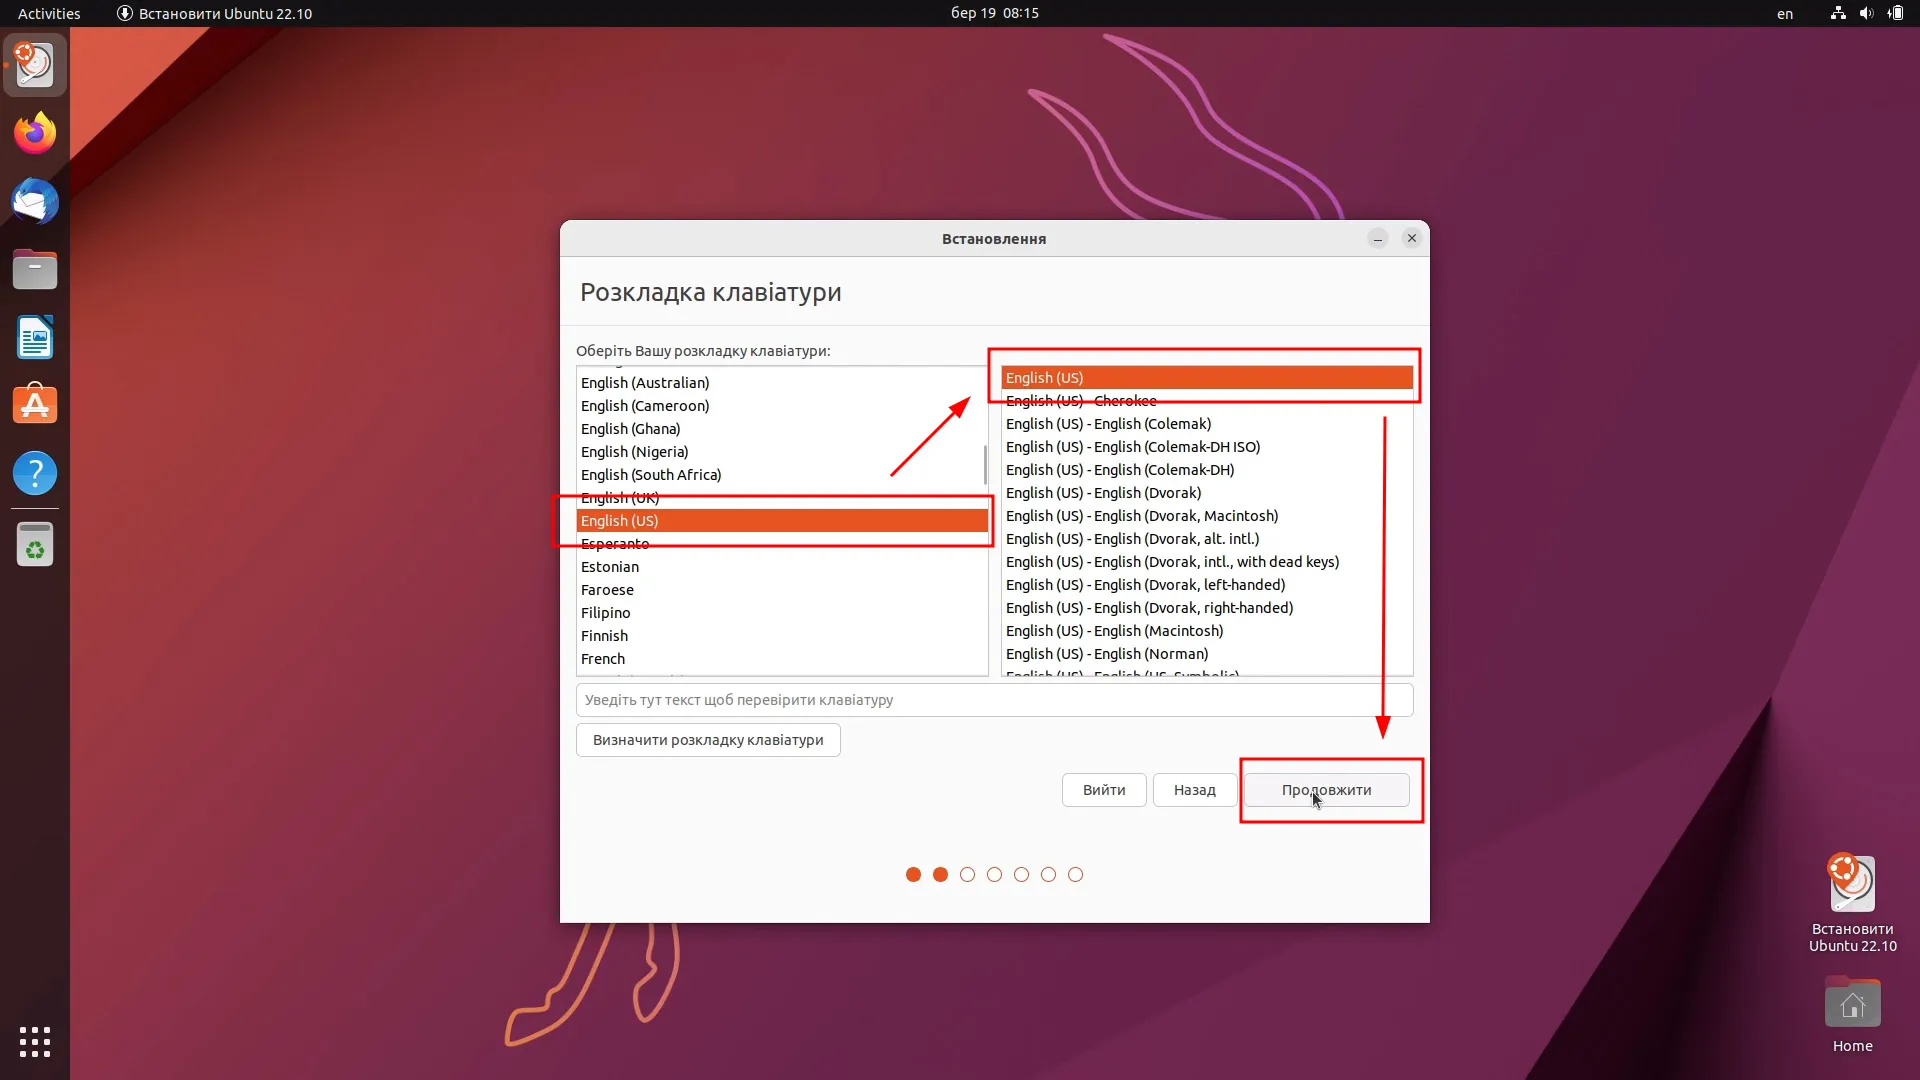 Встановлення Ubuntu 22.10. Обираємо розкладку клавіатури